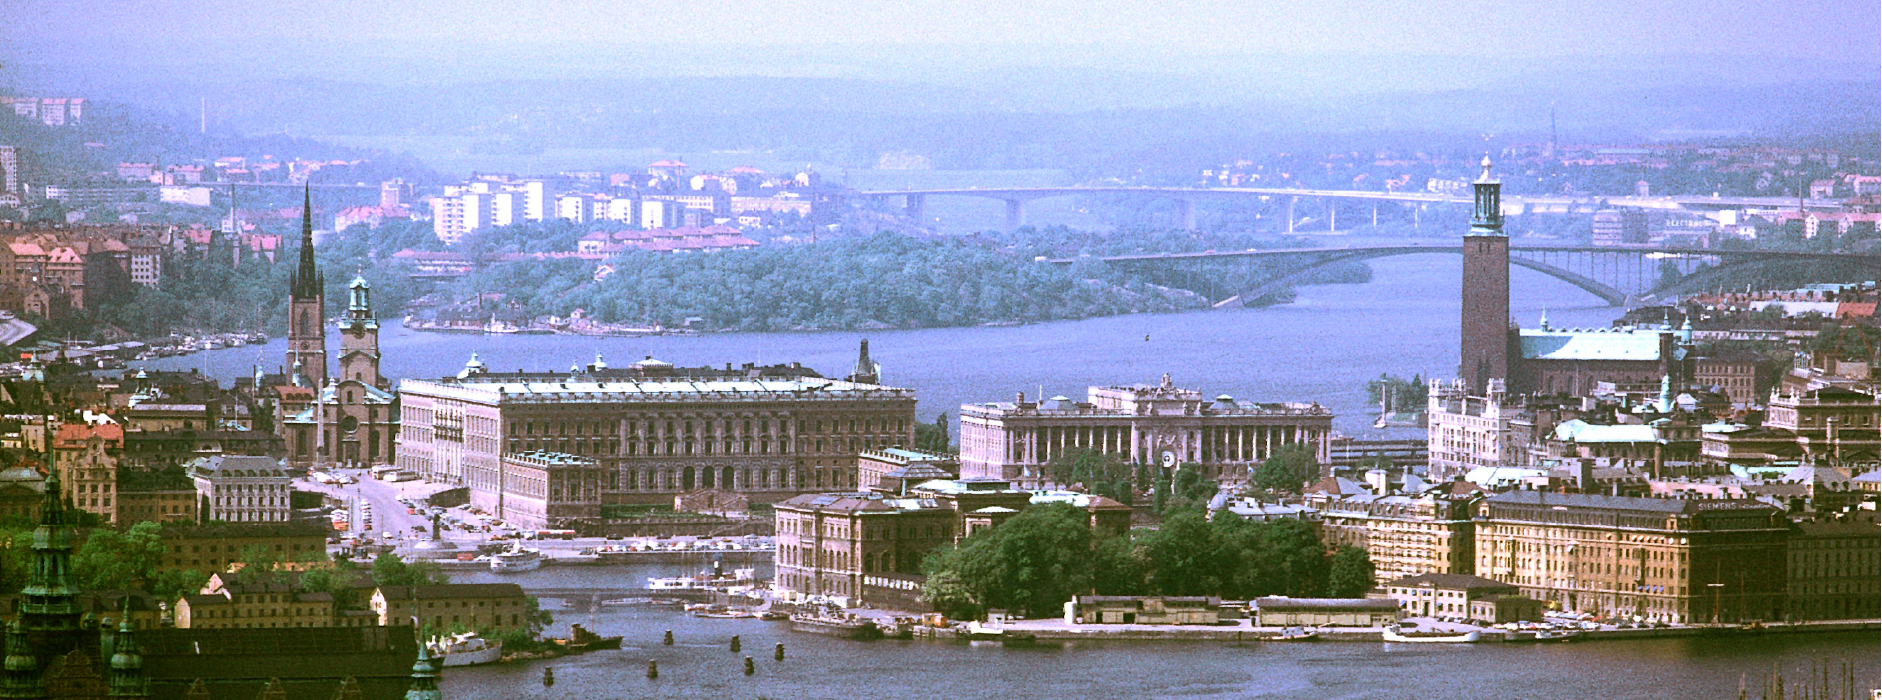 Vue du ciel du Bâtiment Folkets Hus à Stockholm en Suède.